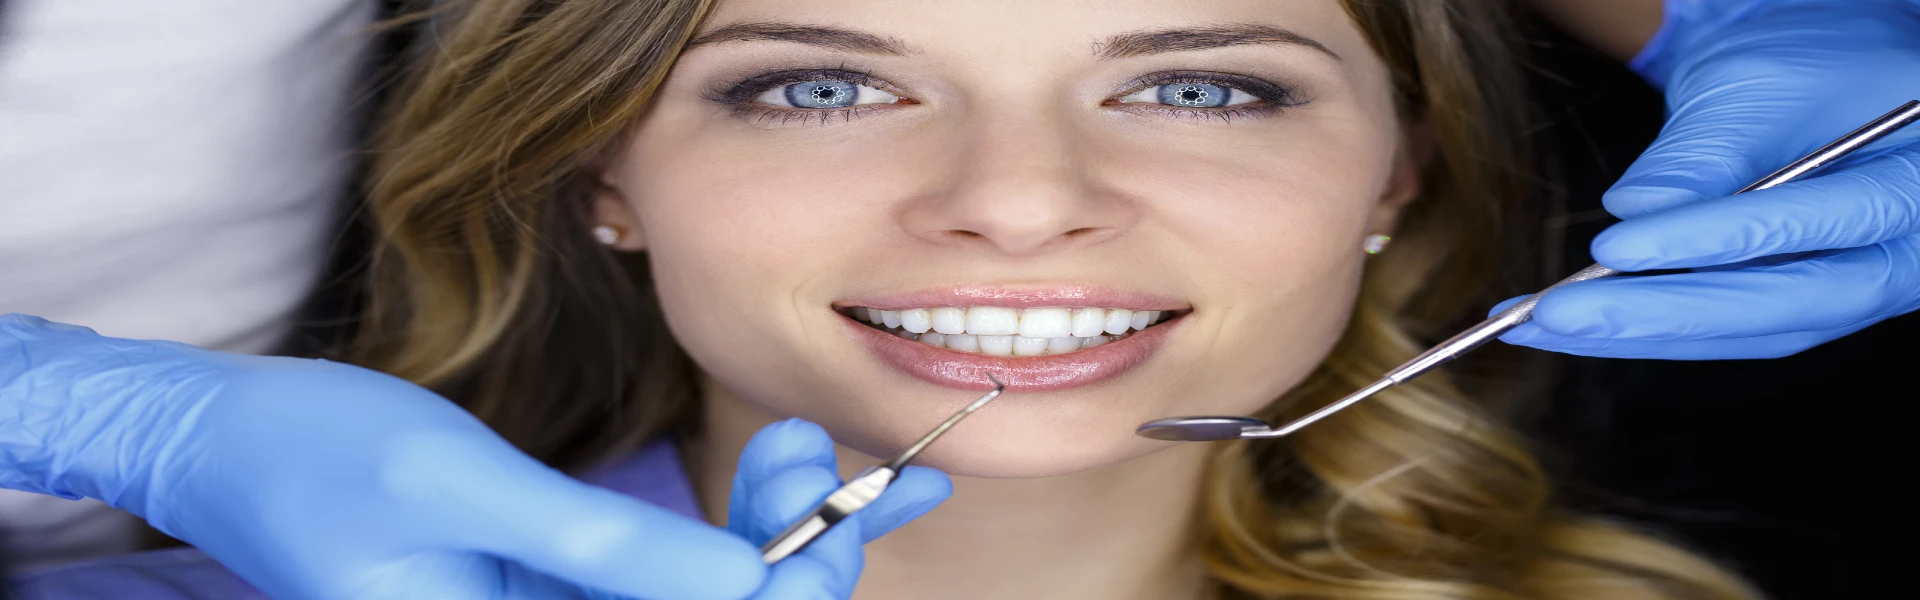 מהו טיפול שיניים